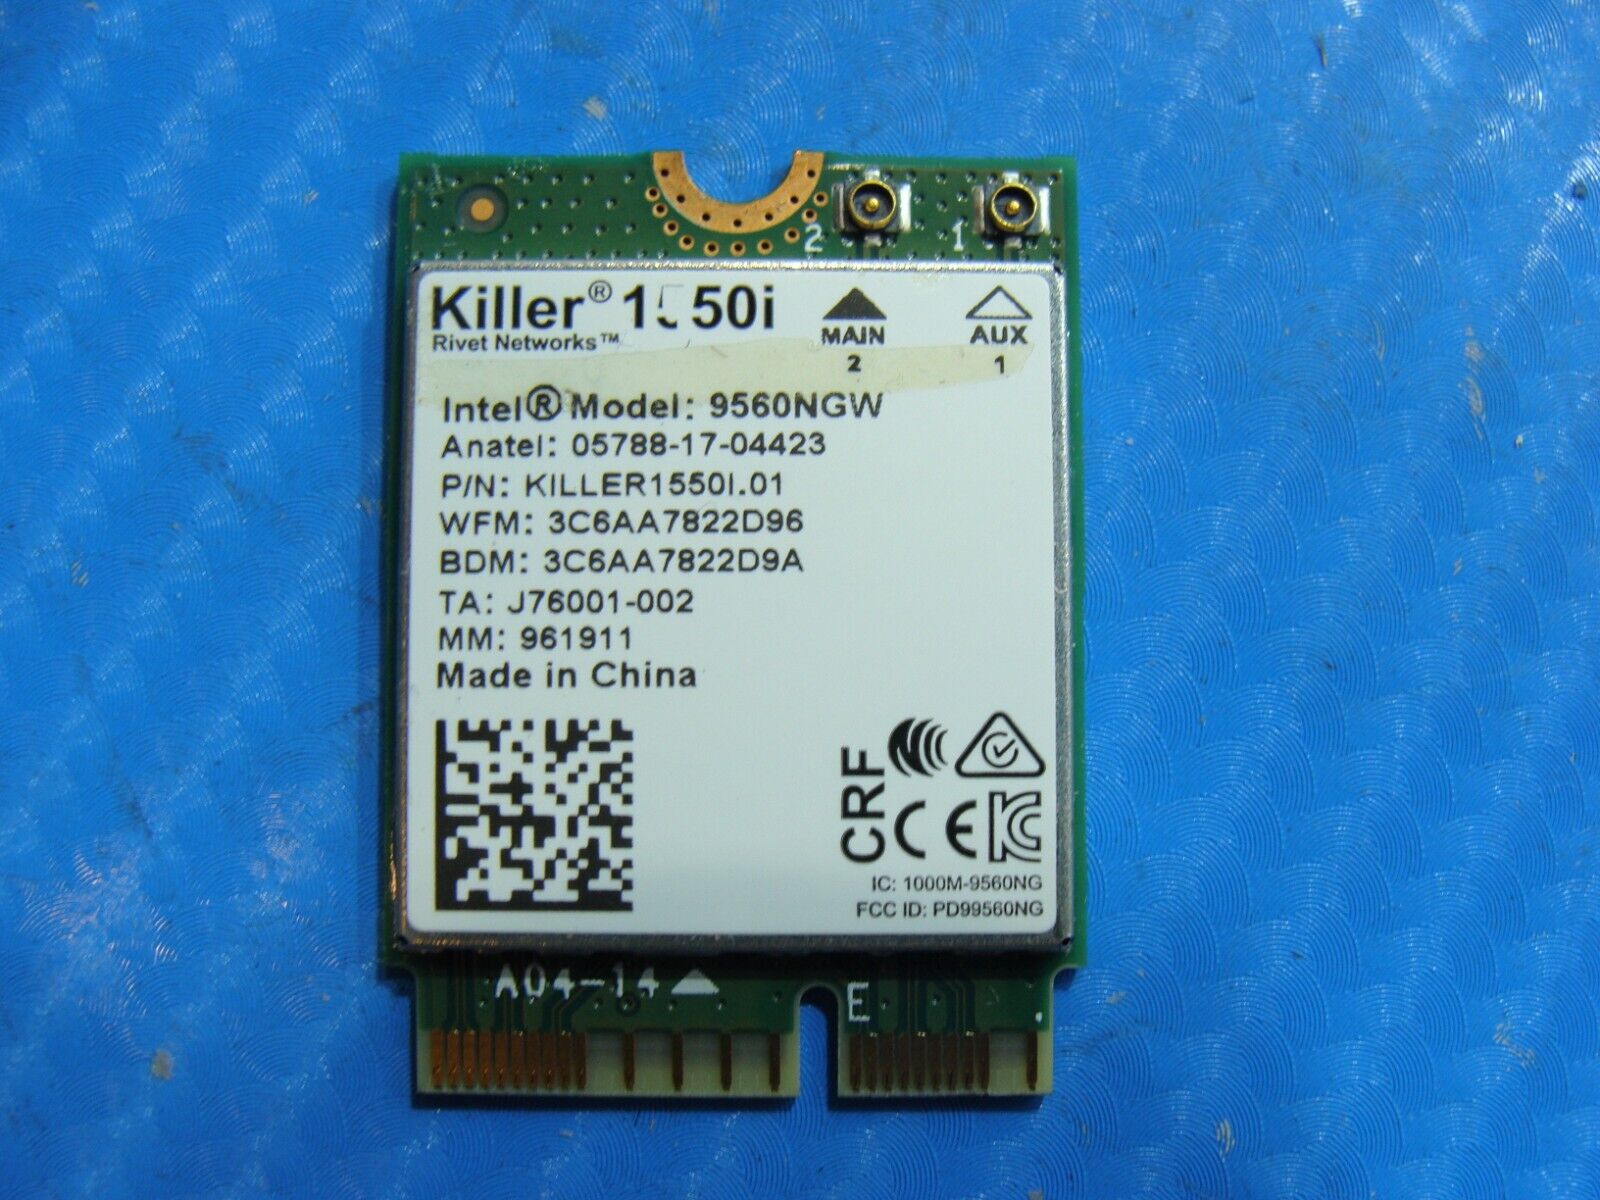 Acer Predator Helios 500 17.3” PH517-51 Wireless WiFi Card 9560NGW KILLER 1550i